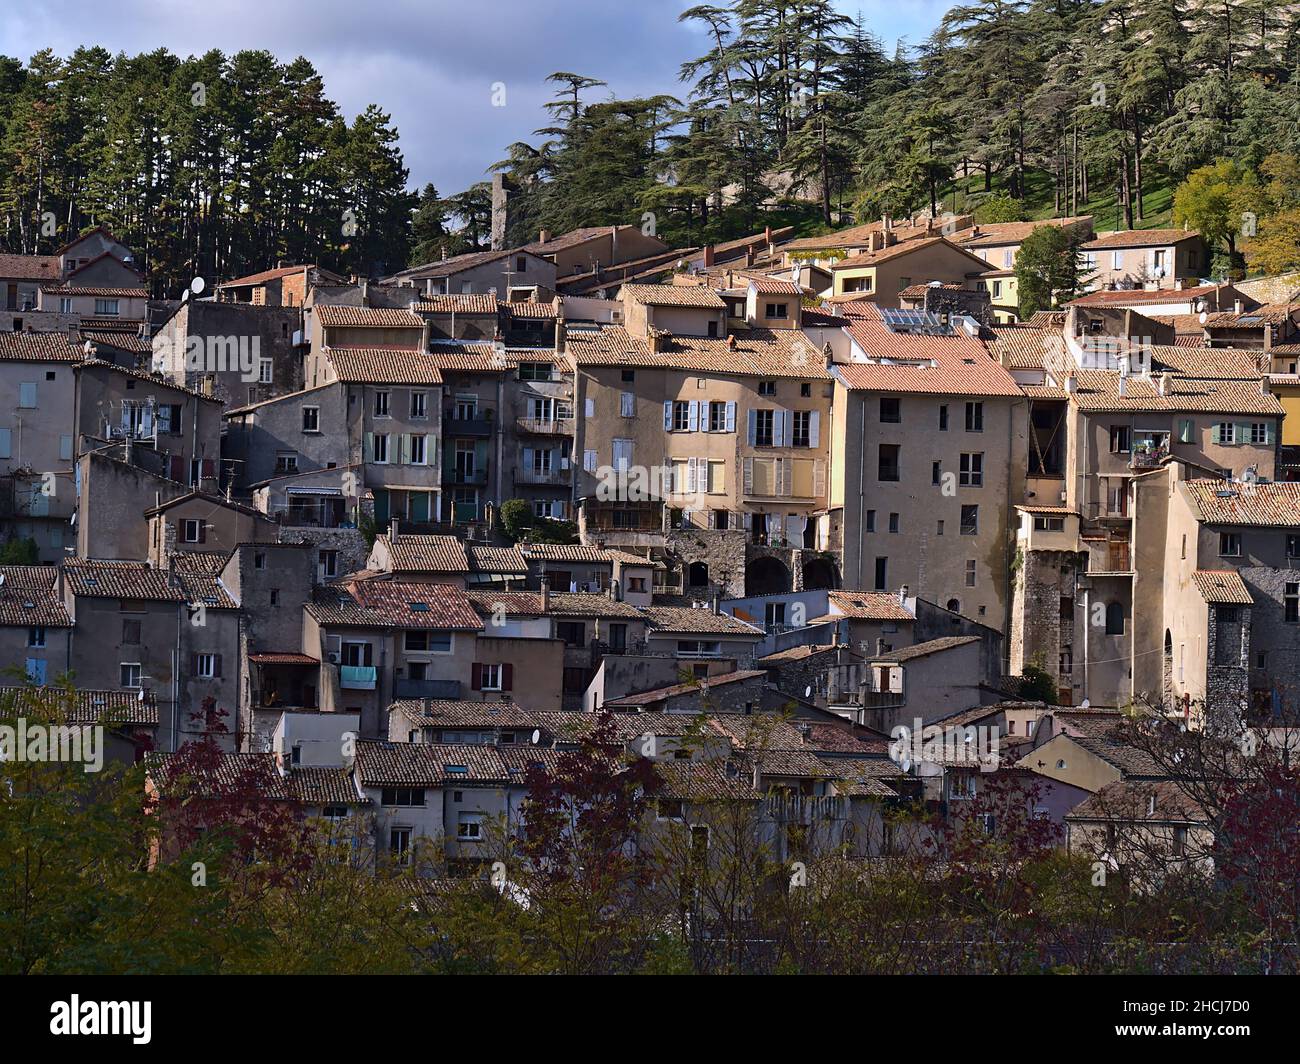 Schöne Aussicht auf die historische Innenstadt der kleinen Stadt Sisteron in der Provence, Frankreich mit charakteristischen alten Gebäuden dicht beieinander stehen. Stockfoto